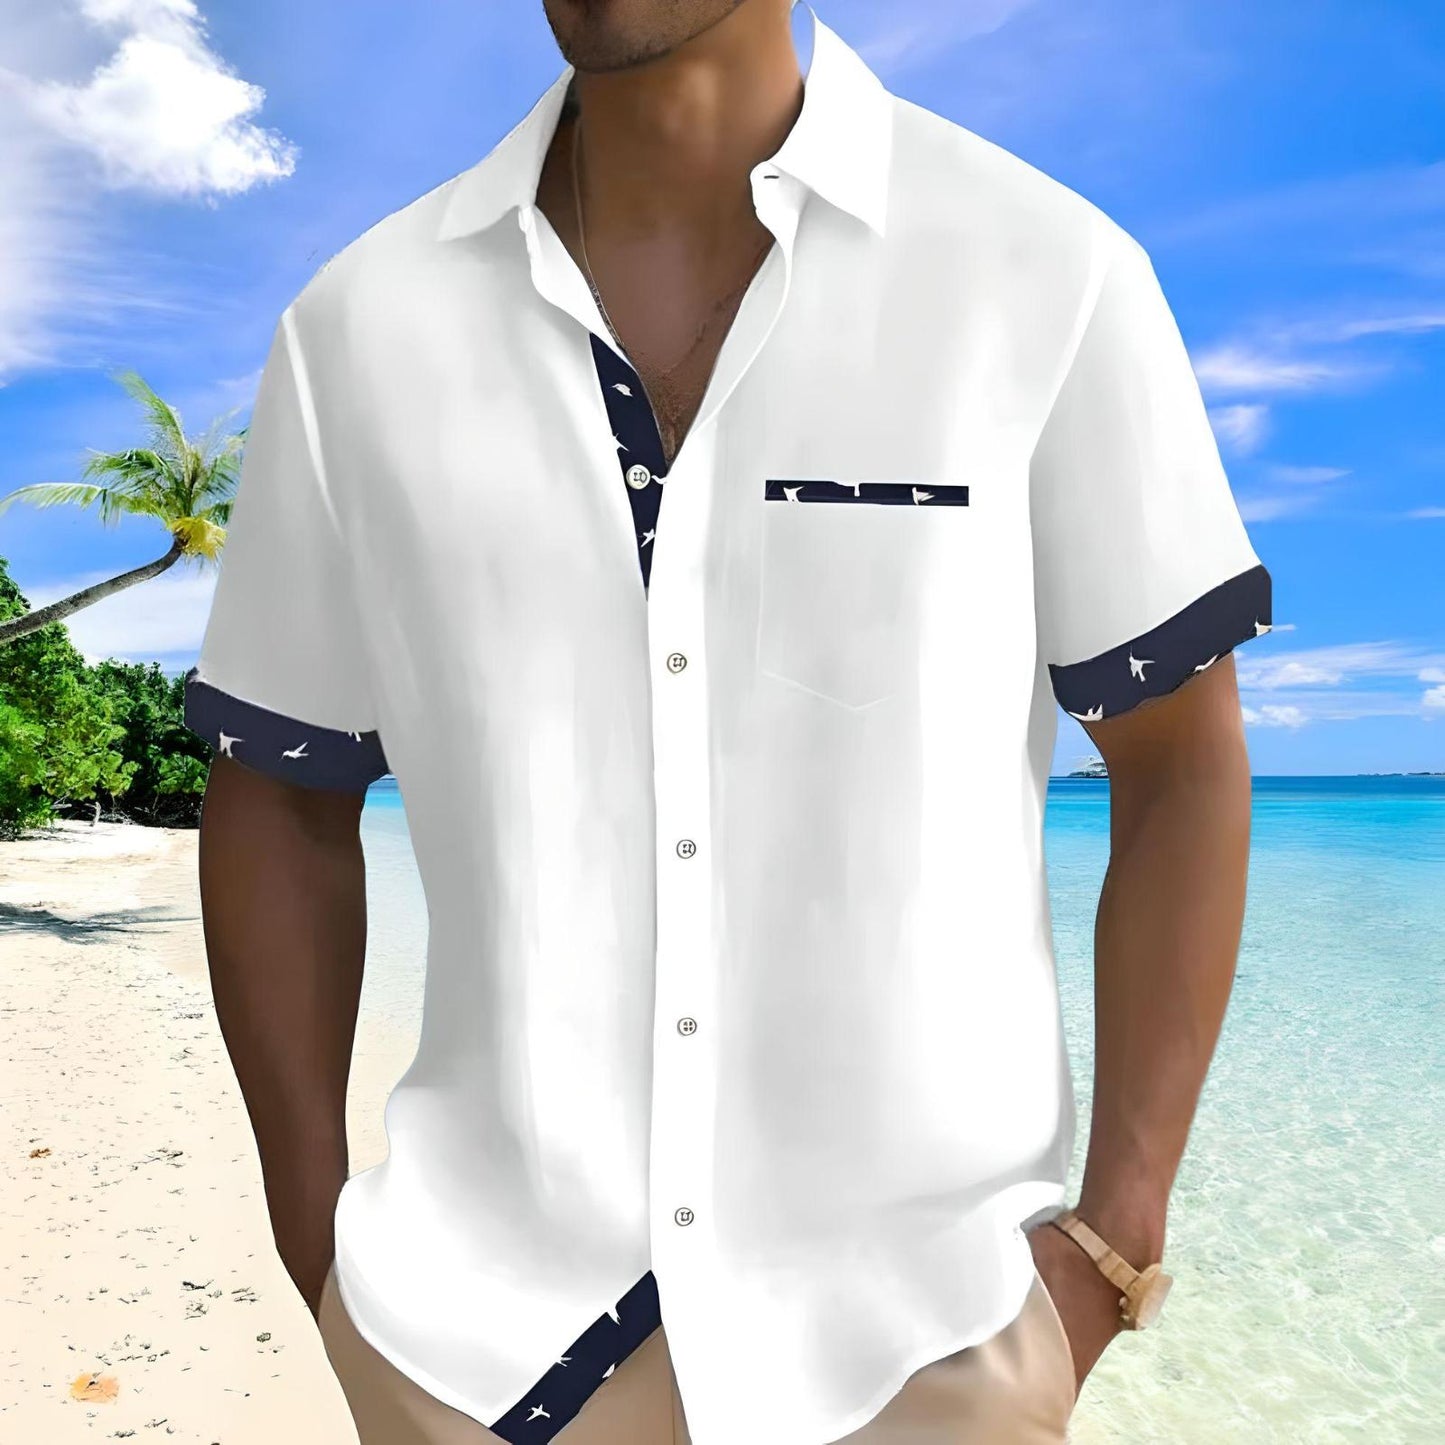 Simon | Stylish summer shirt - White / S - AMVIM